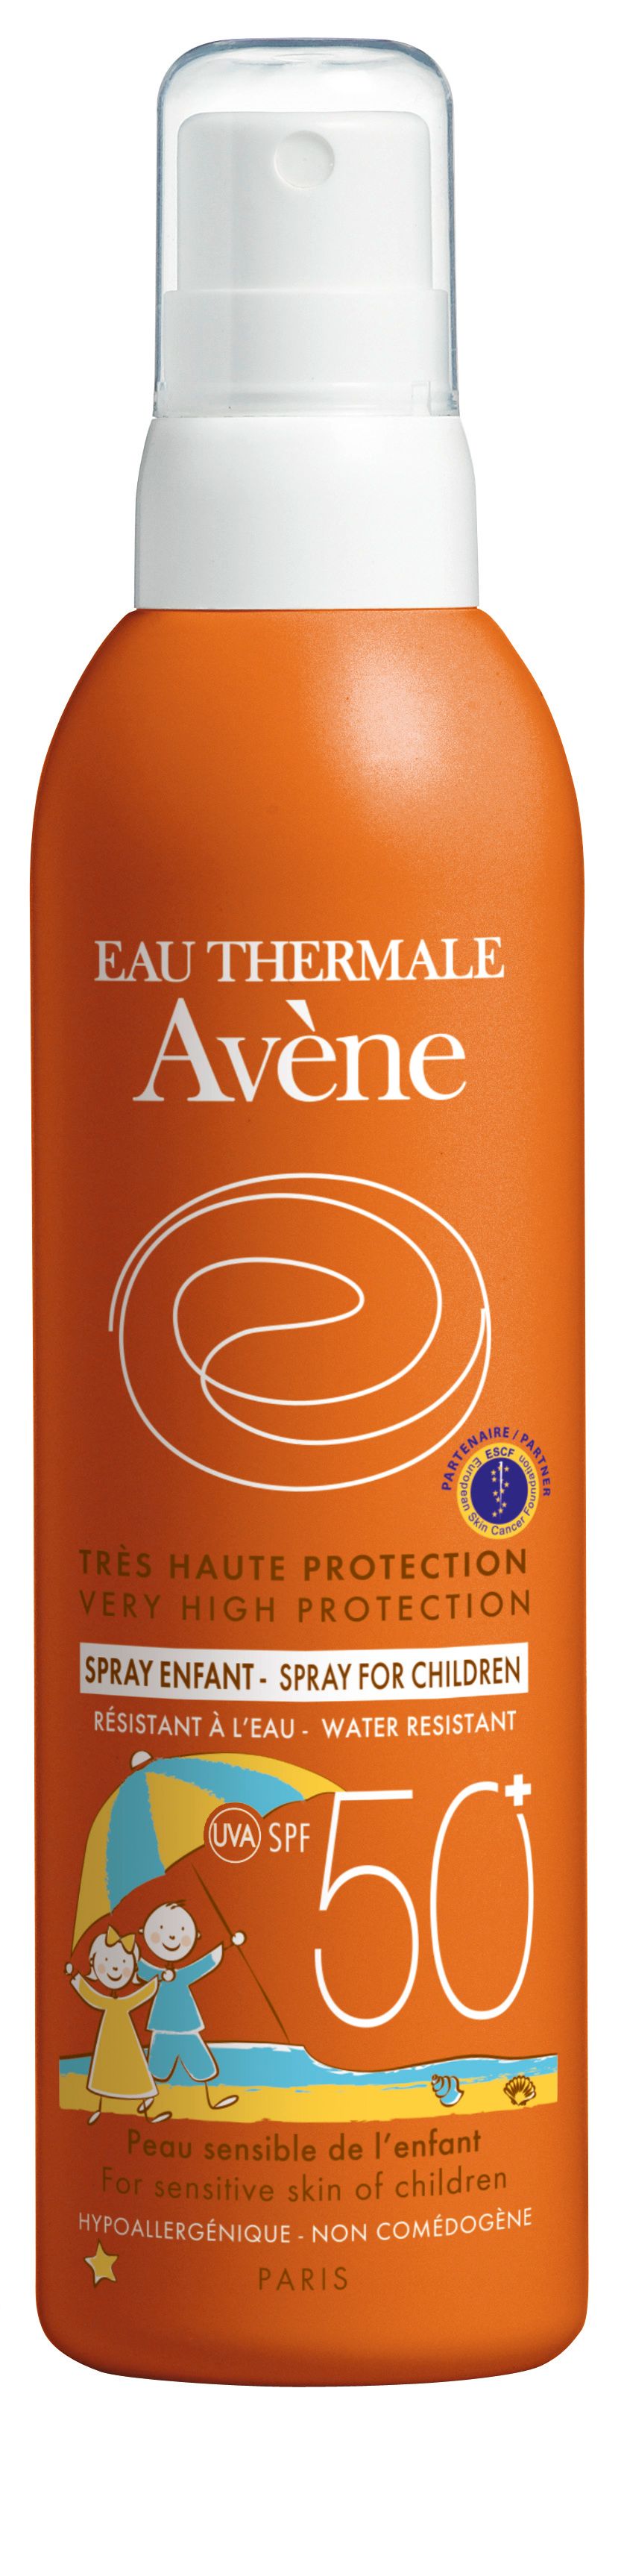 фото упаковки Avene солнцезащитный детский спрей SPF50+